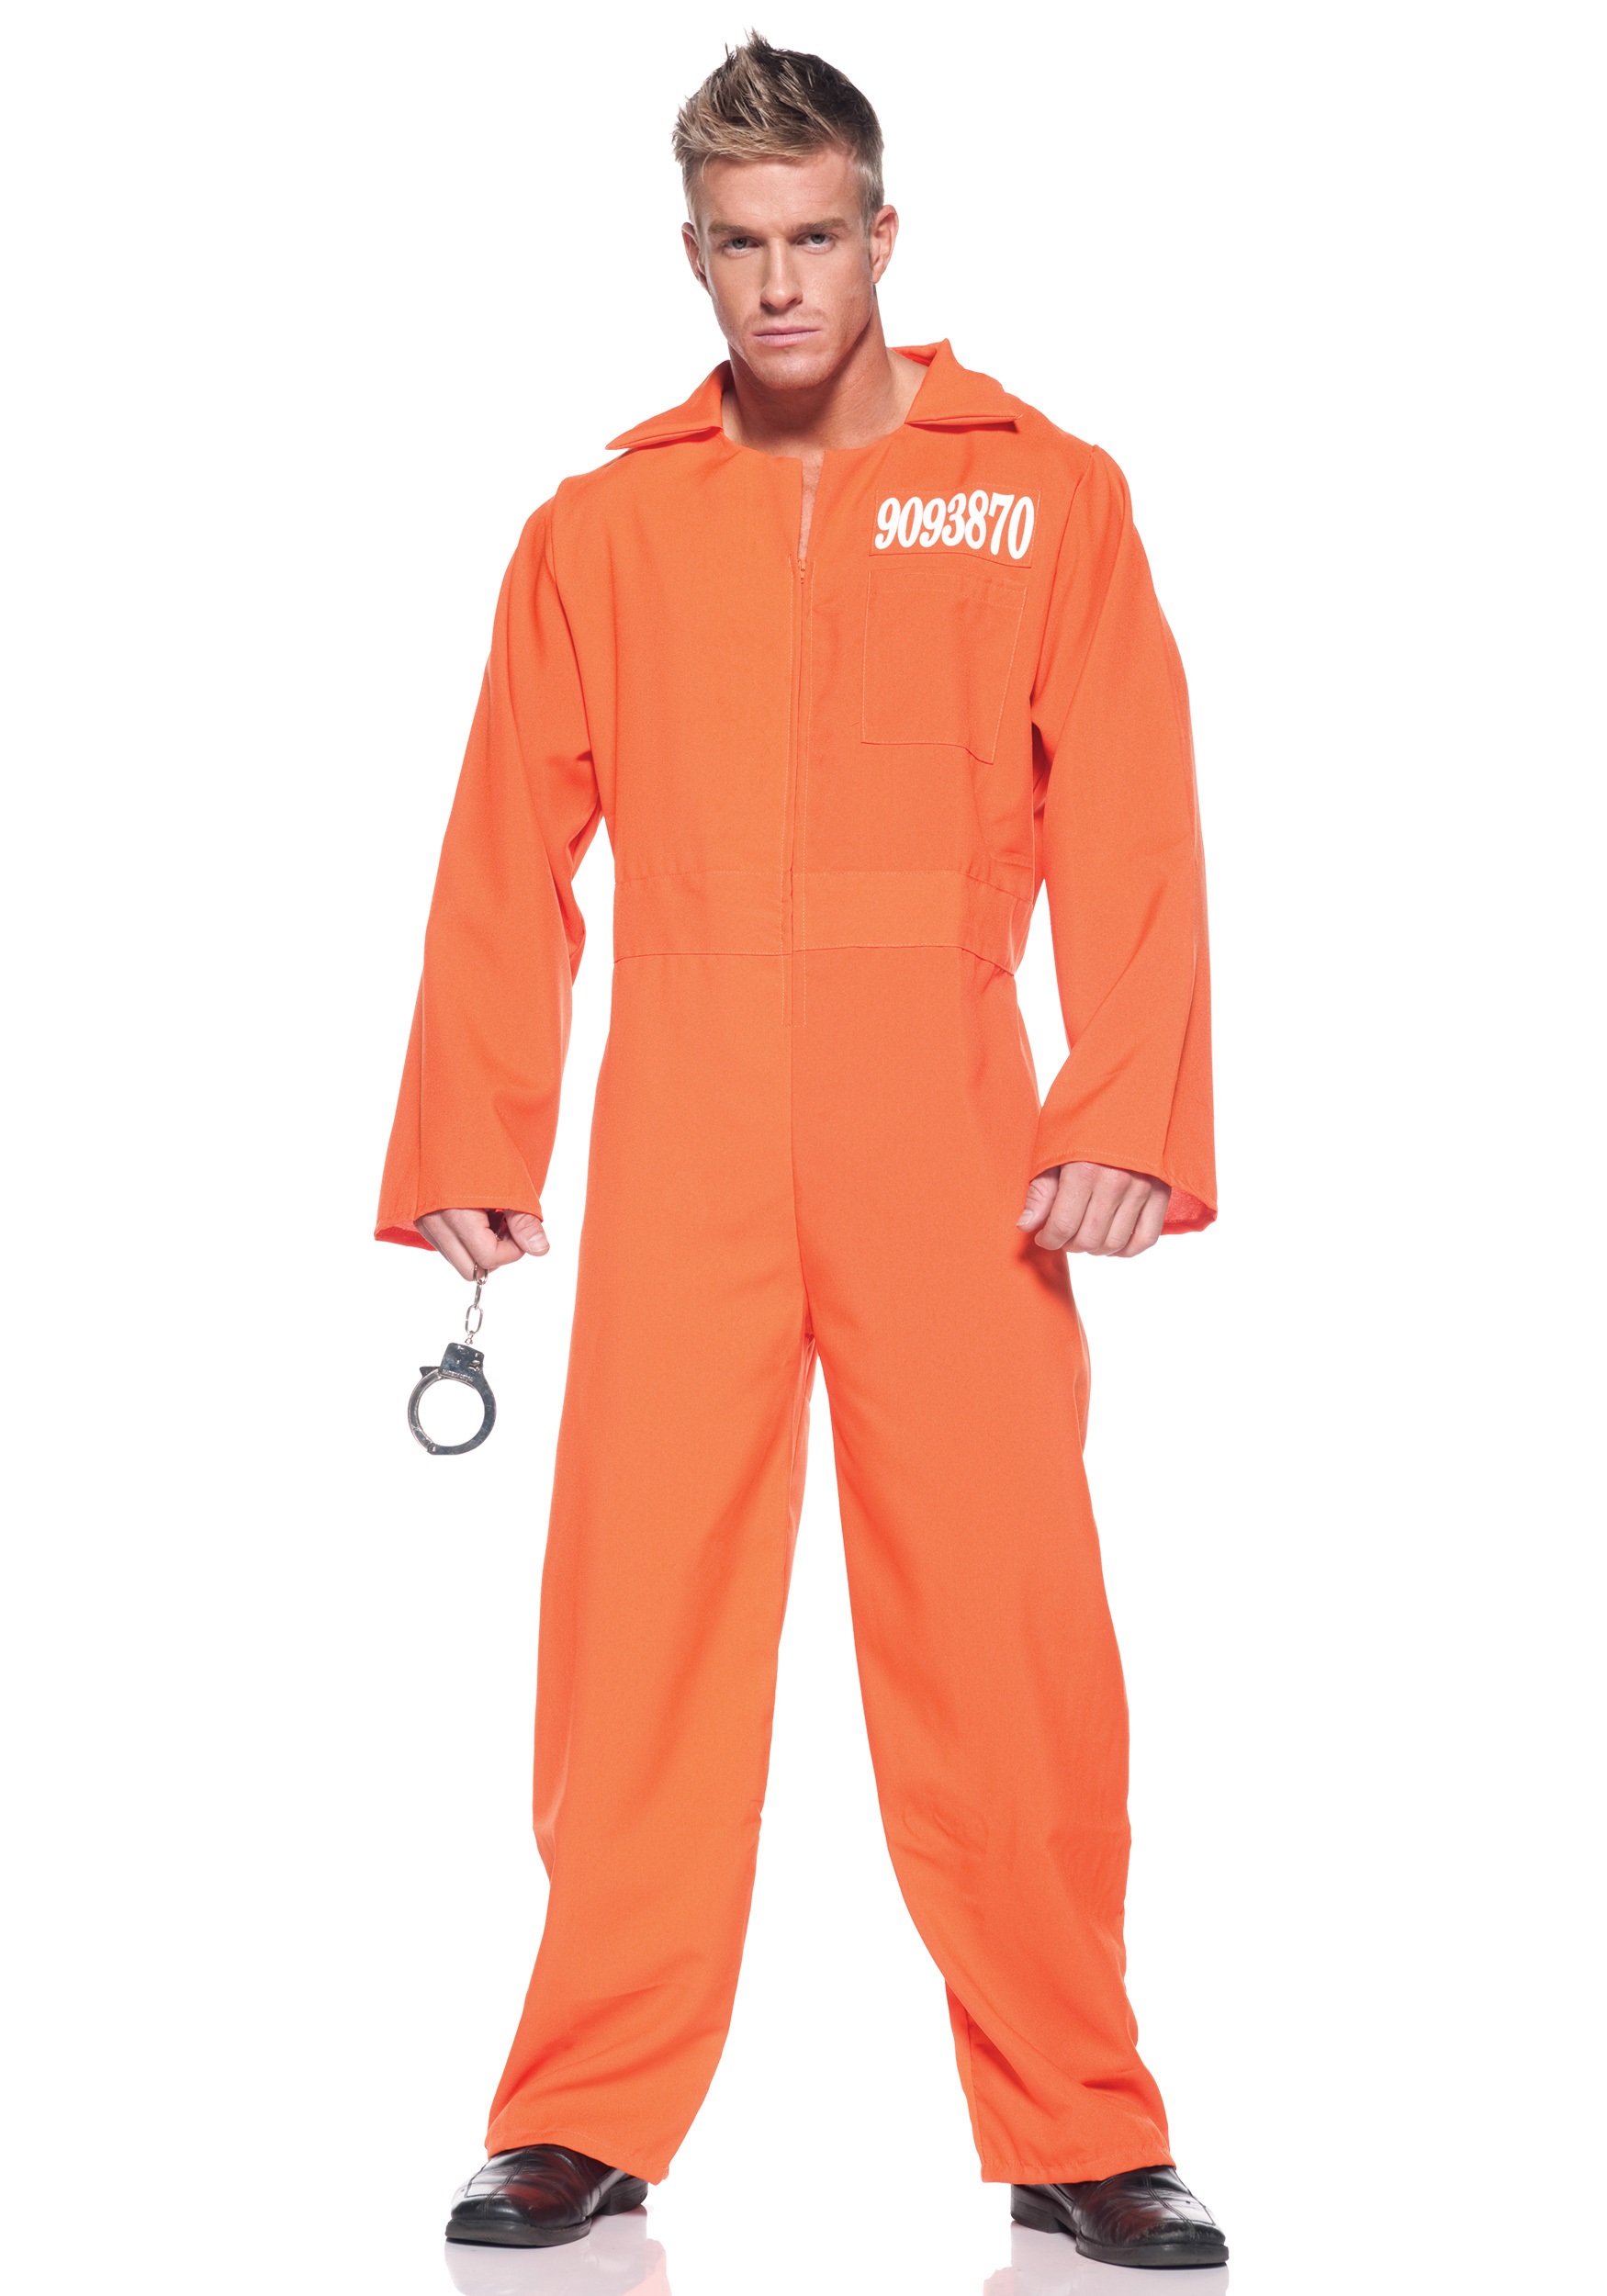 Men’s Prison Jumpsuit Costume